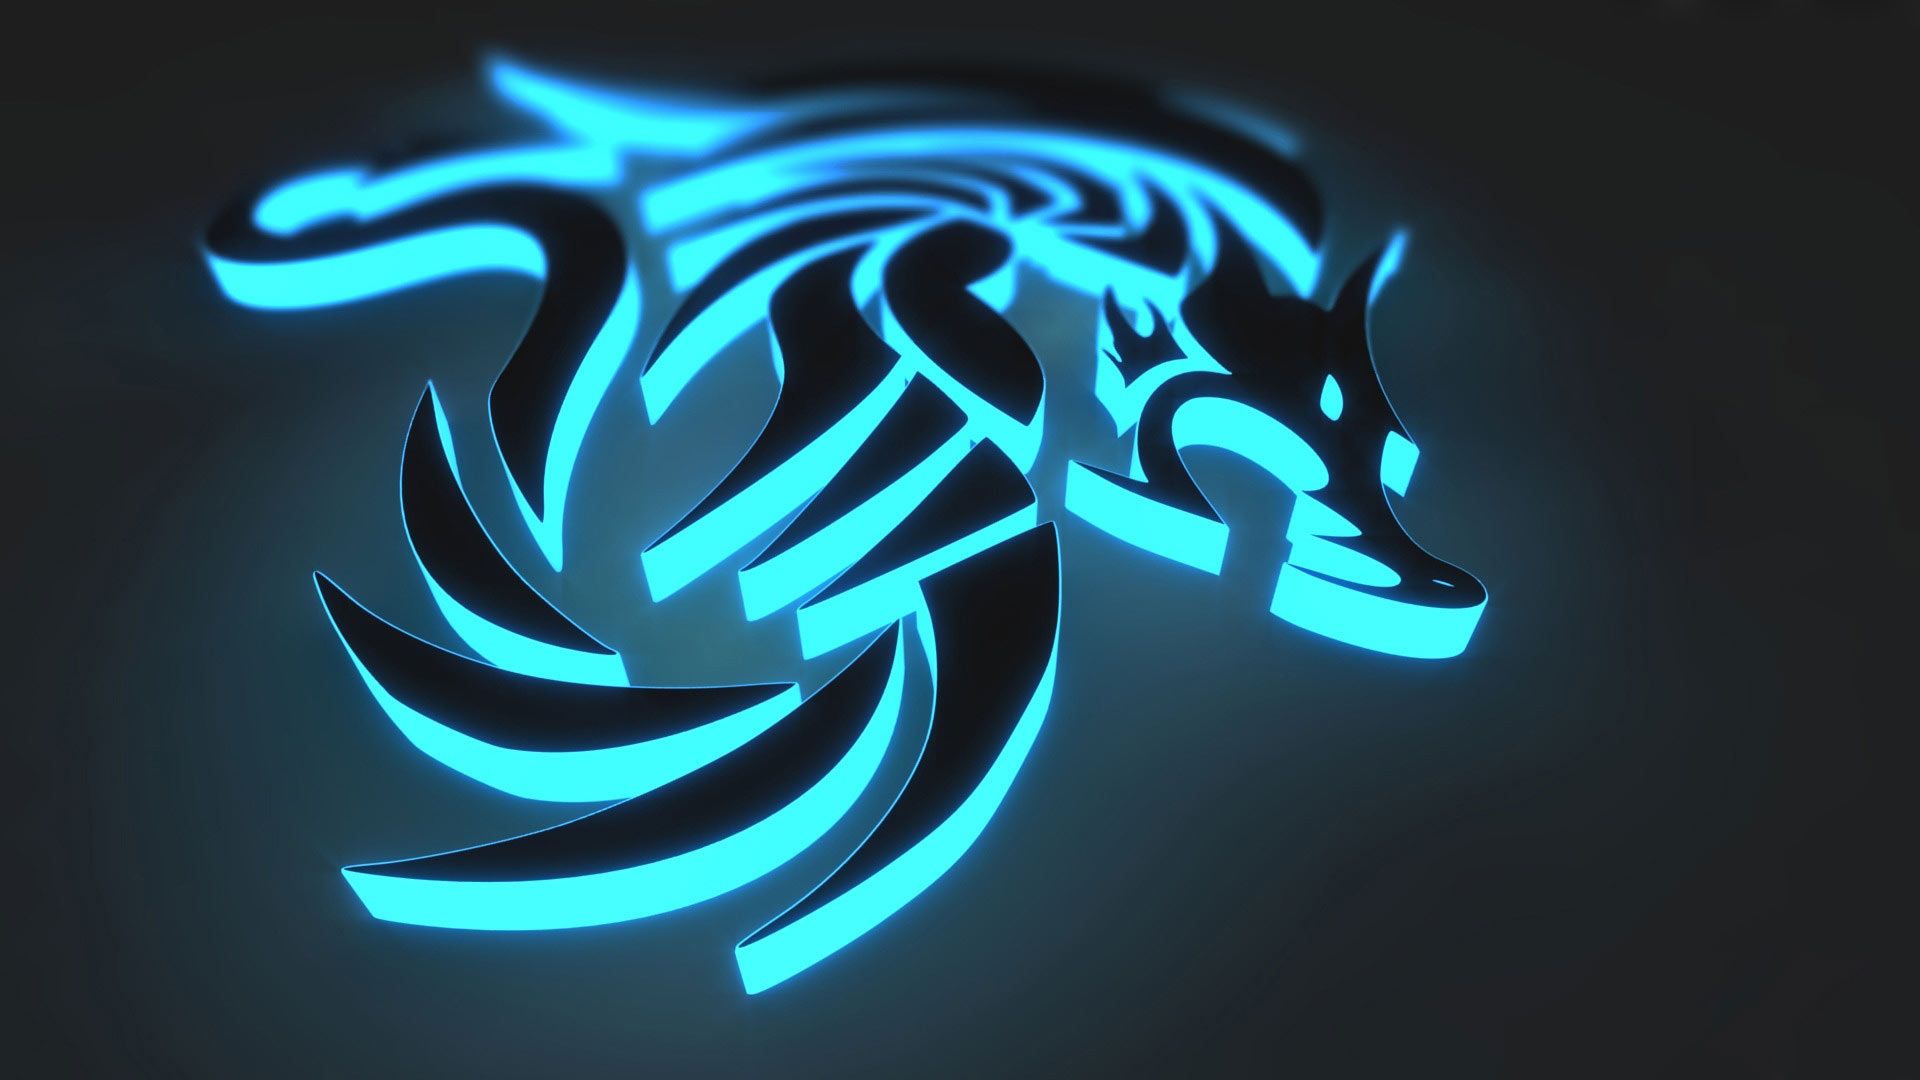 3D Dragon Neon Epic Wallpaper HD | fondos de pantalla épicos en 2019 | Continuar